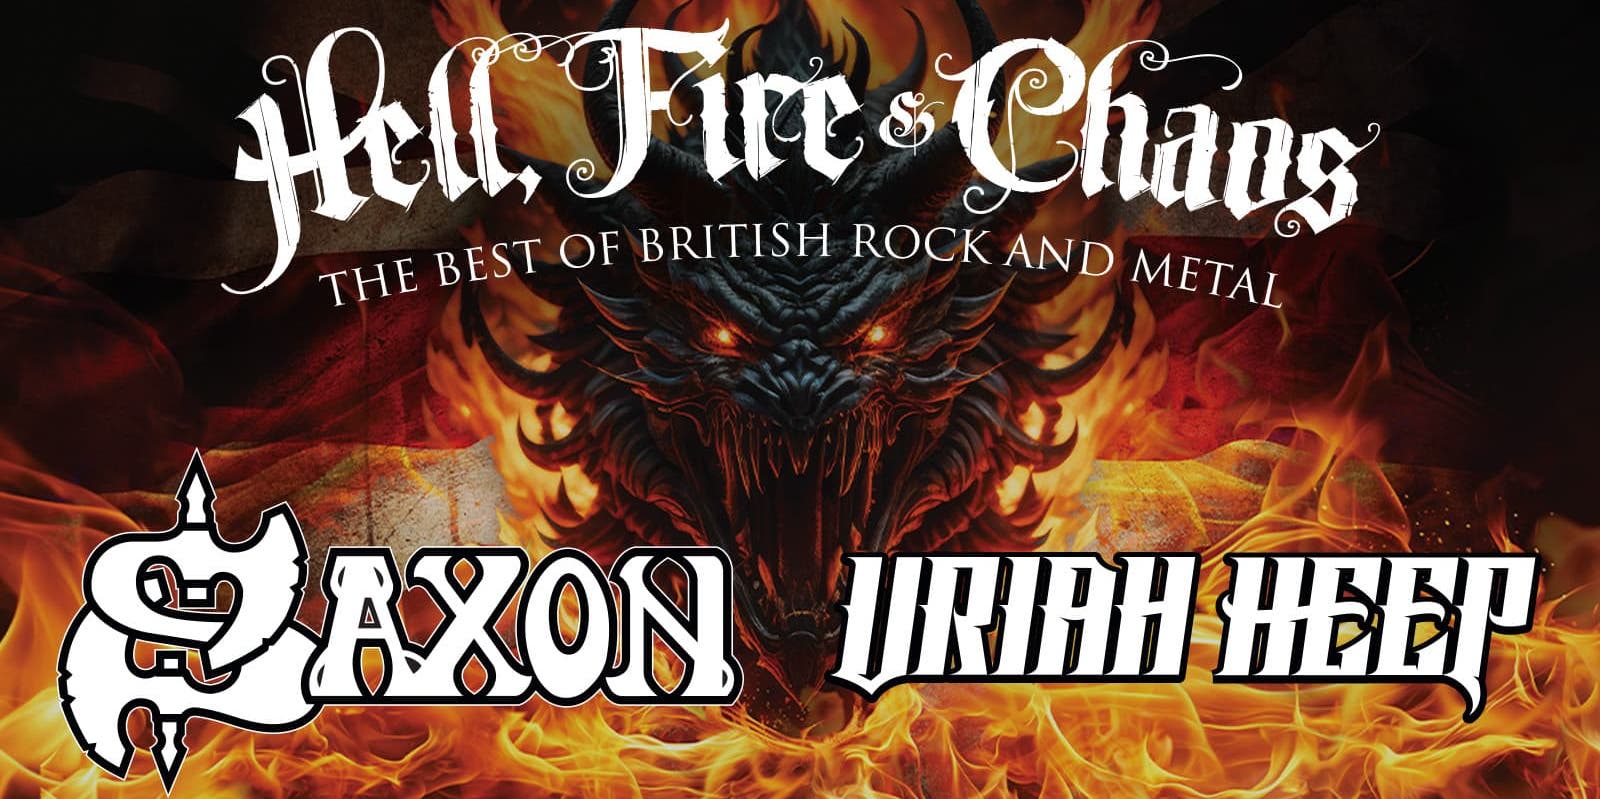 Saxon & Uriah Heep promotional image